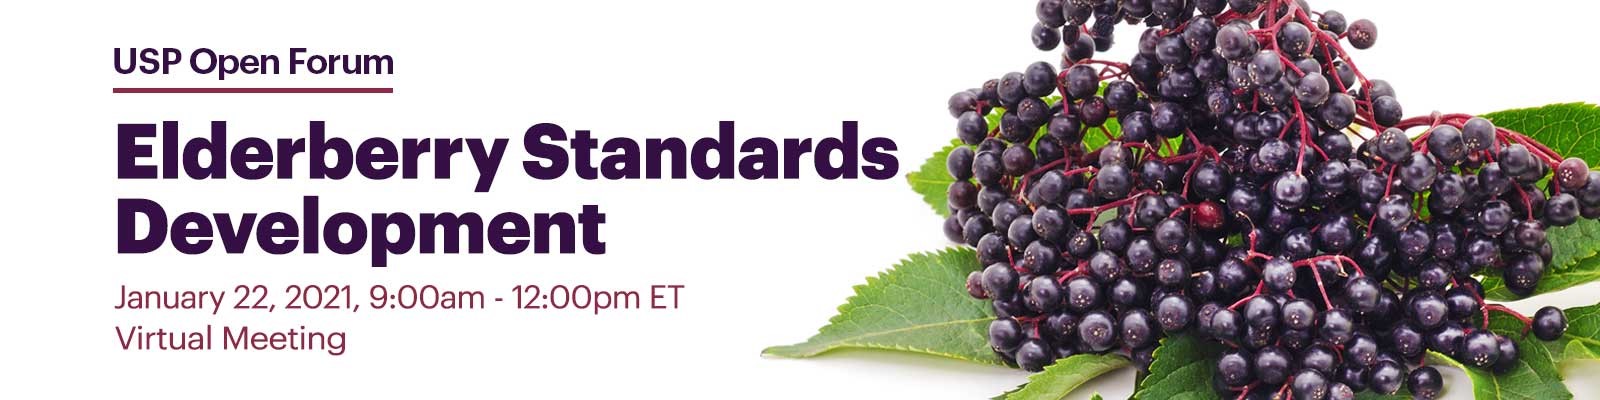 elderberry standards development